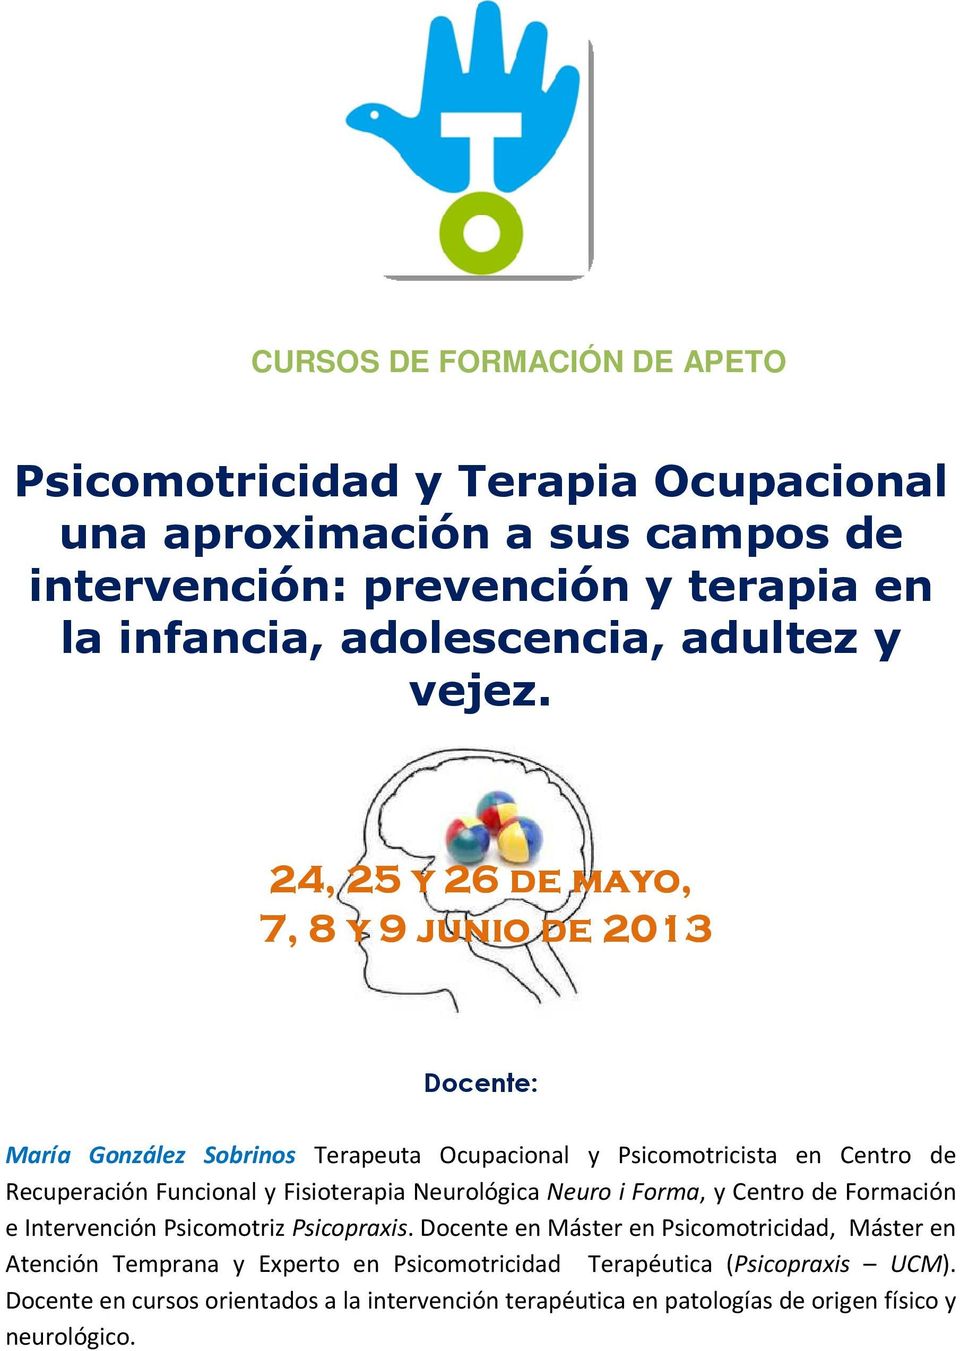 24, 25 y 26 de mayo, 7, 8 y 9 junio de 2013 Docente: María González Sobrinos Terapeuta Ocupacional y Psicomotricista en Centro de Recuperación Funcional y Fisioterapia